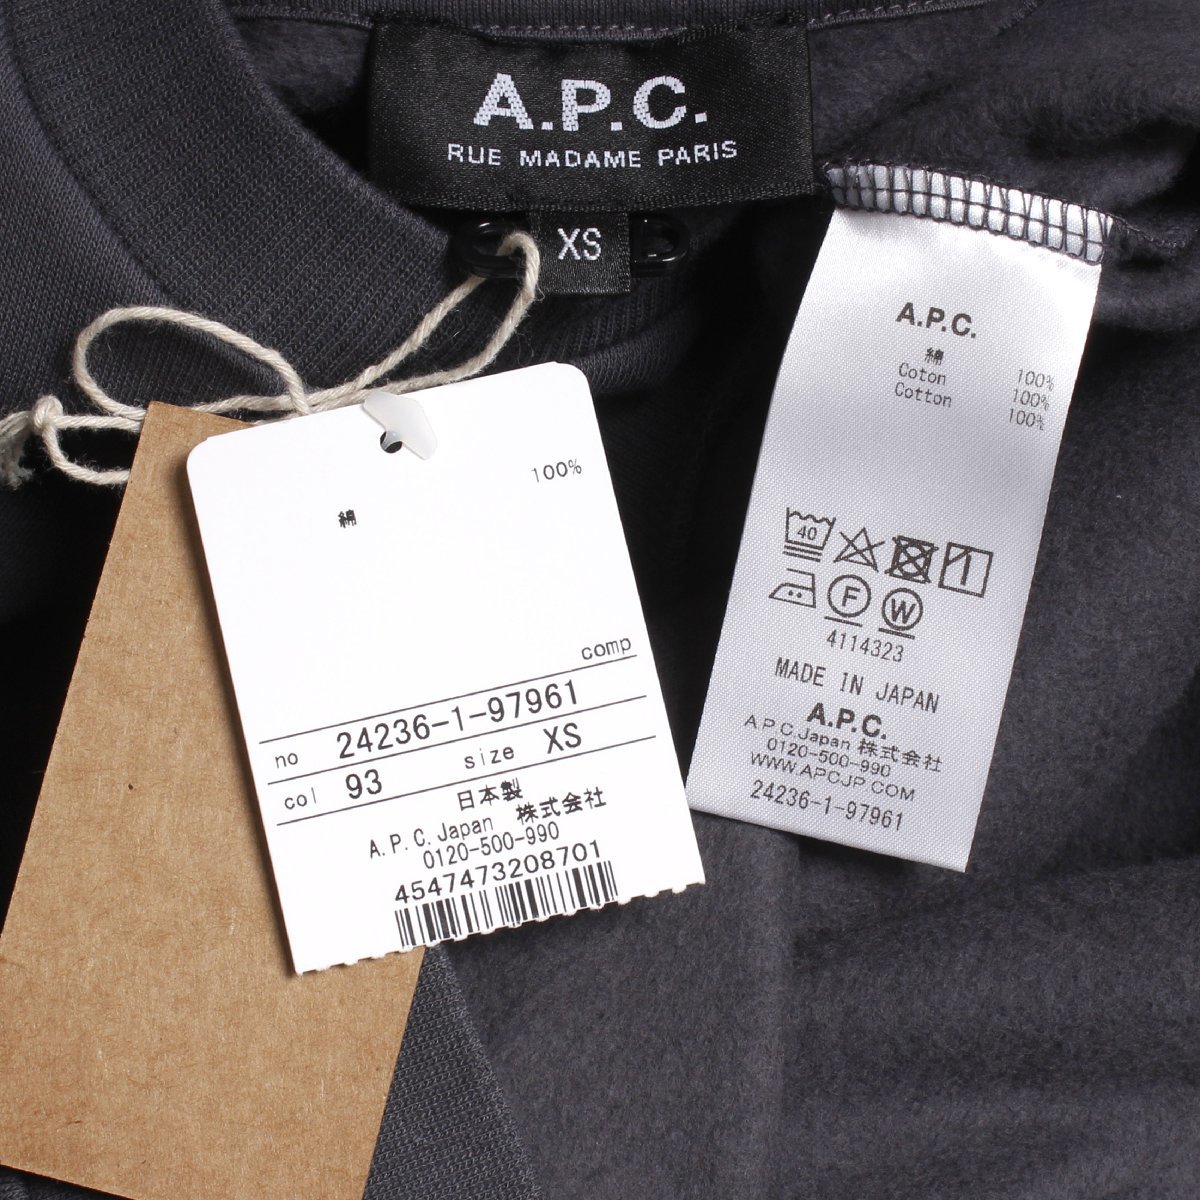 [ с биркой * новый товар ]A.P.C. Gilles спортивная фуфайка обычная цена 27,500 иен sizeXS серый A.P.C. APC